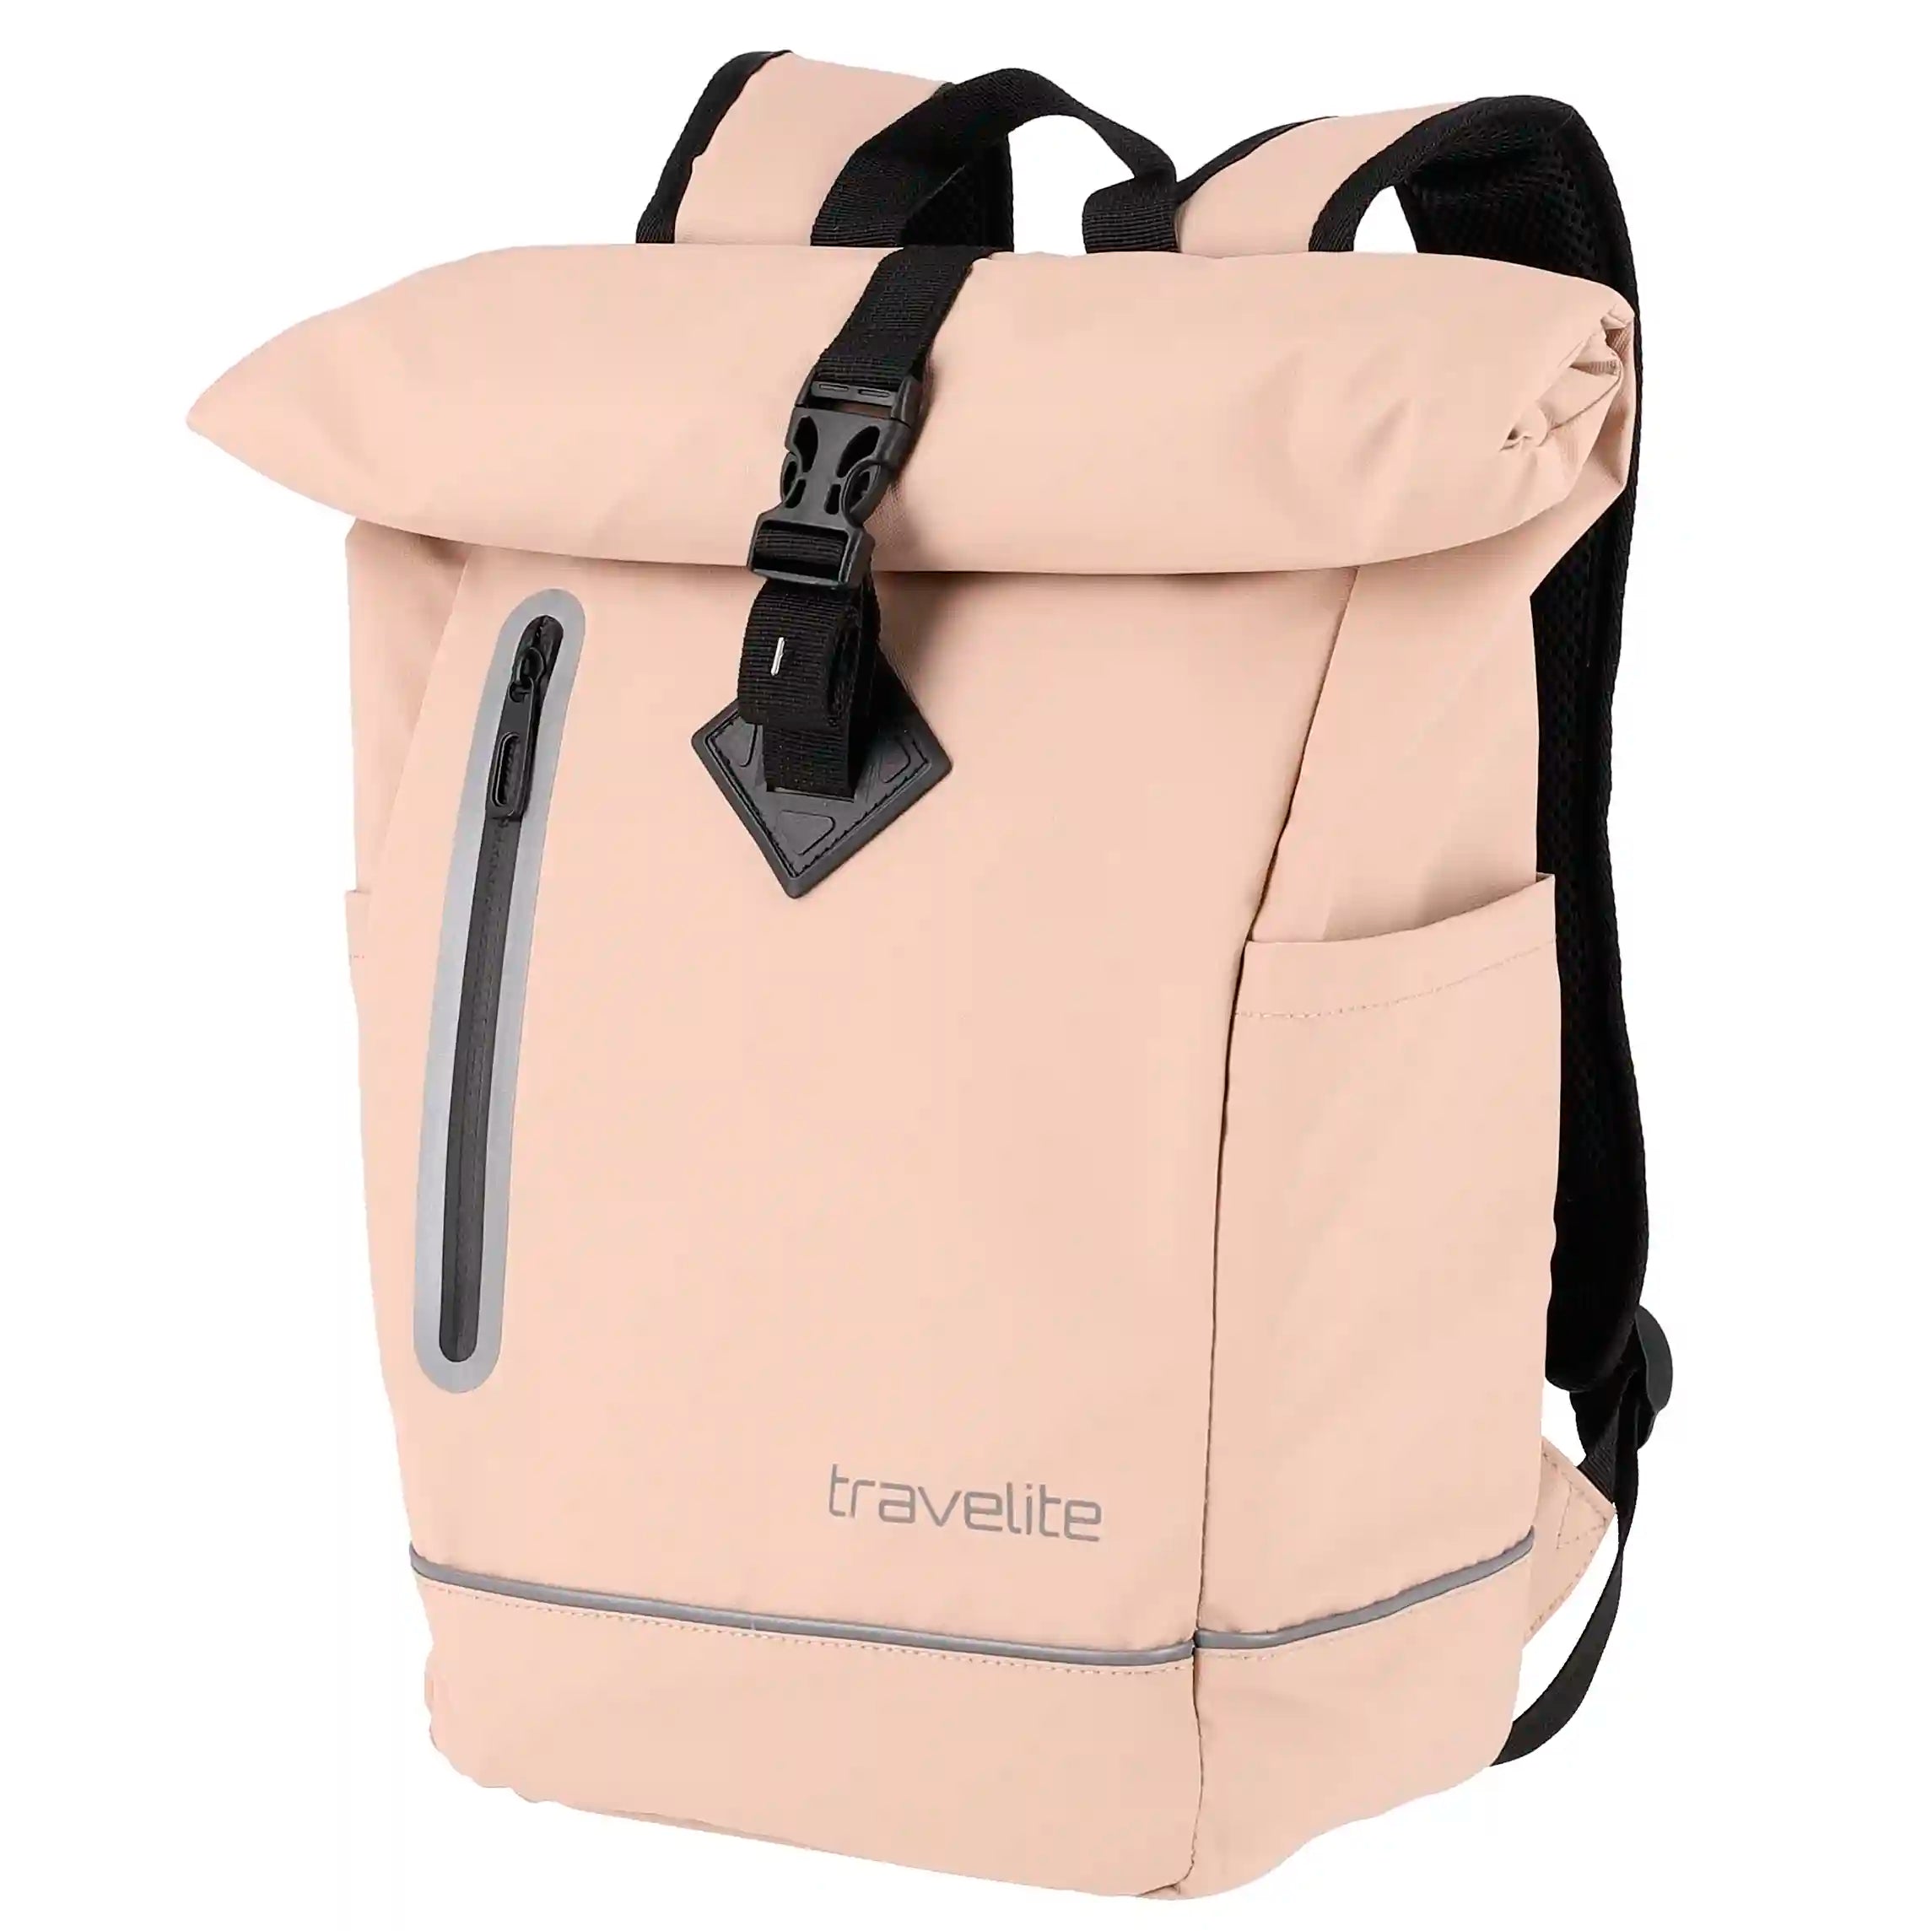 Travelite Basics Roll-Up Backpack Tarpaulin 48 cm - Light Brown